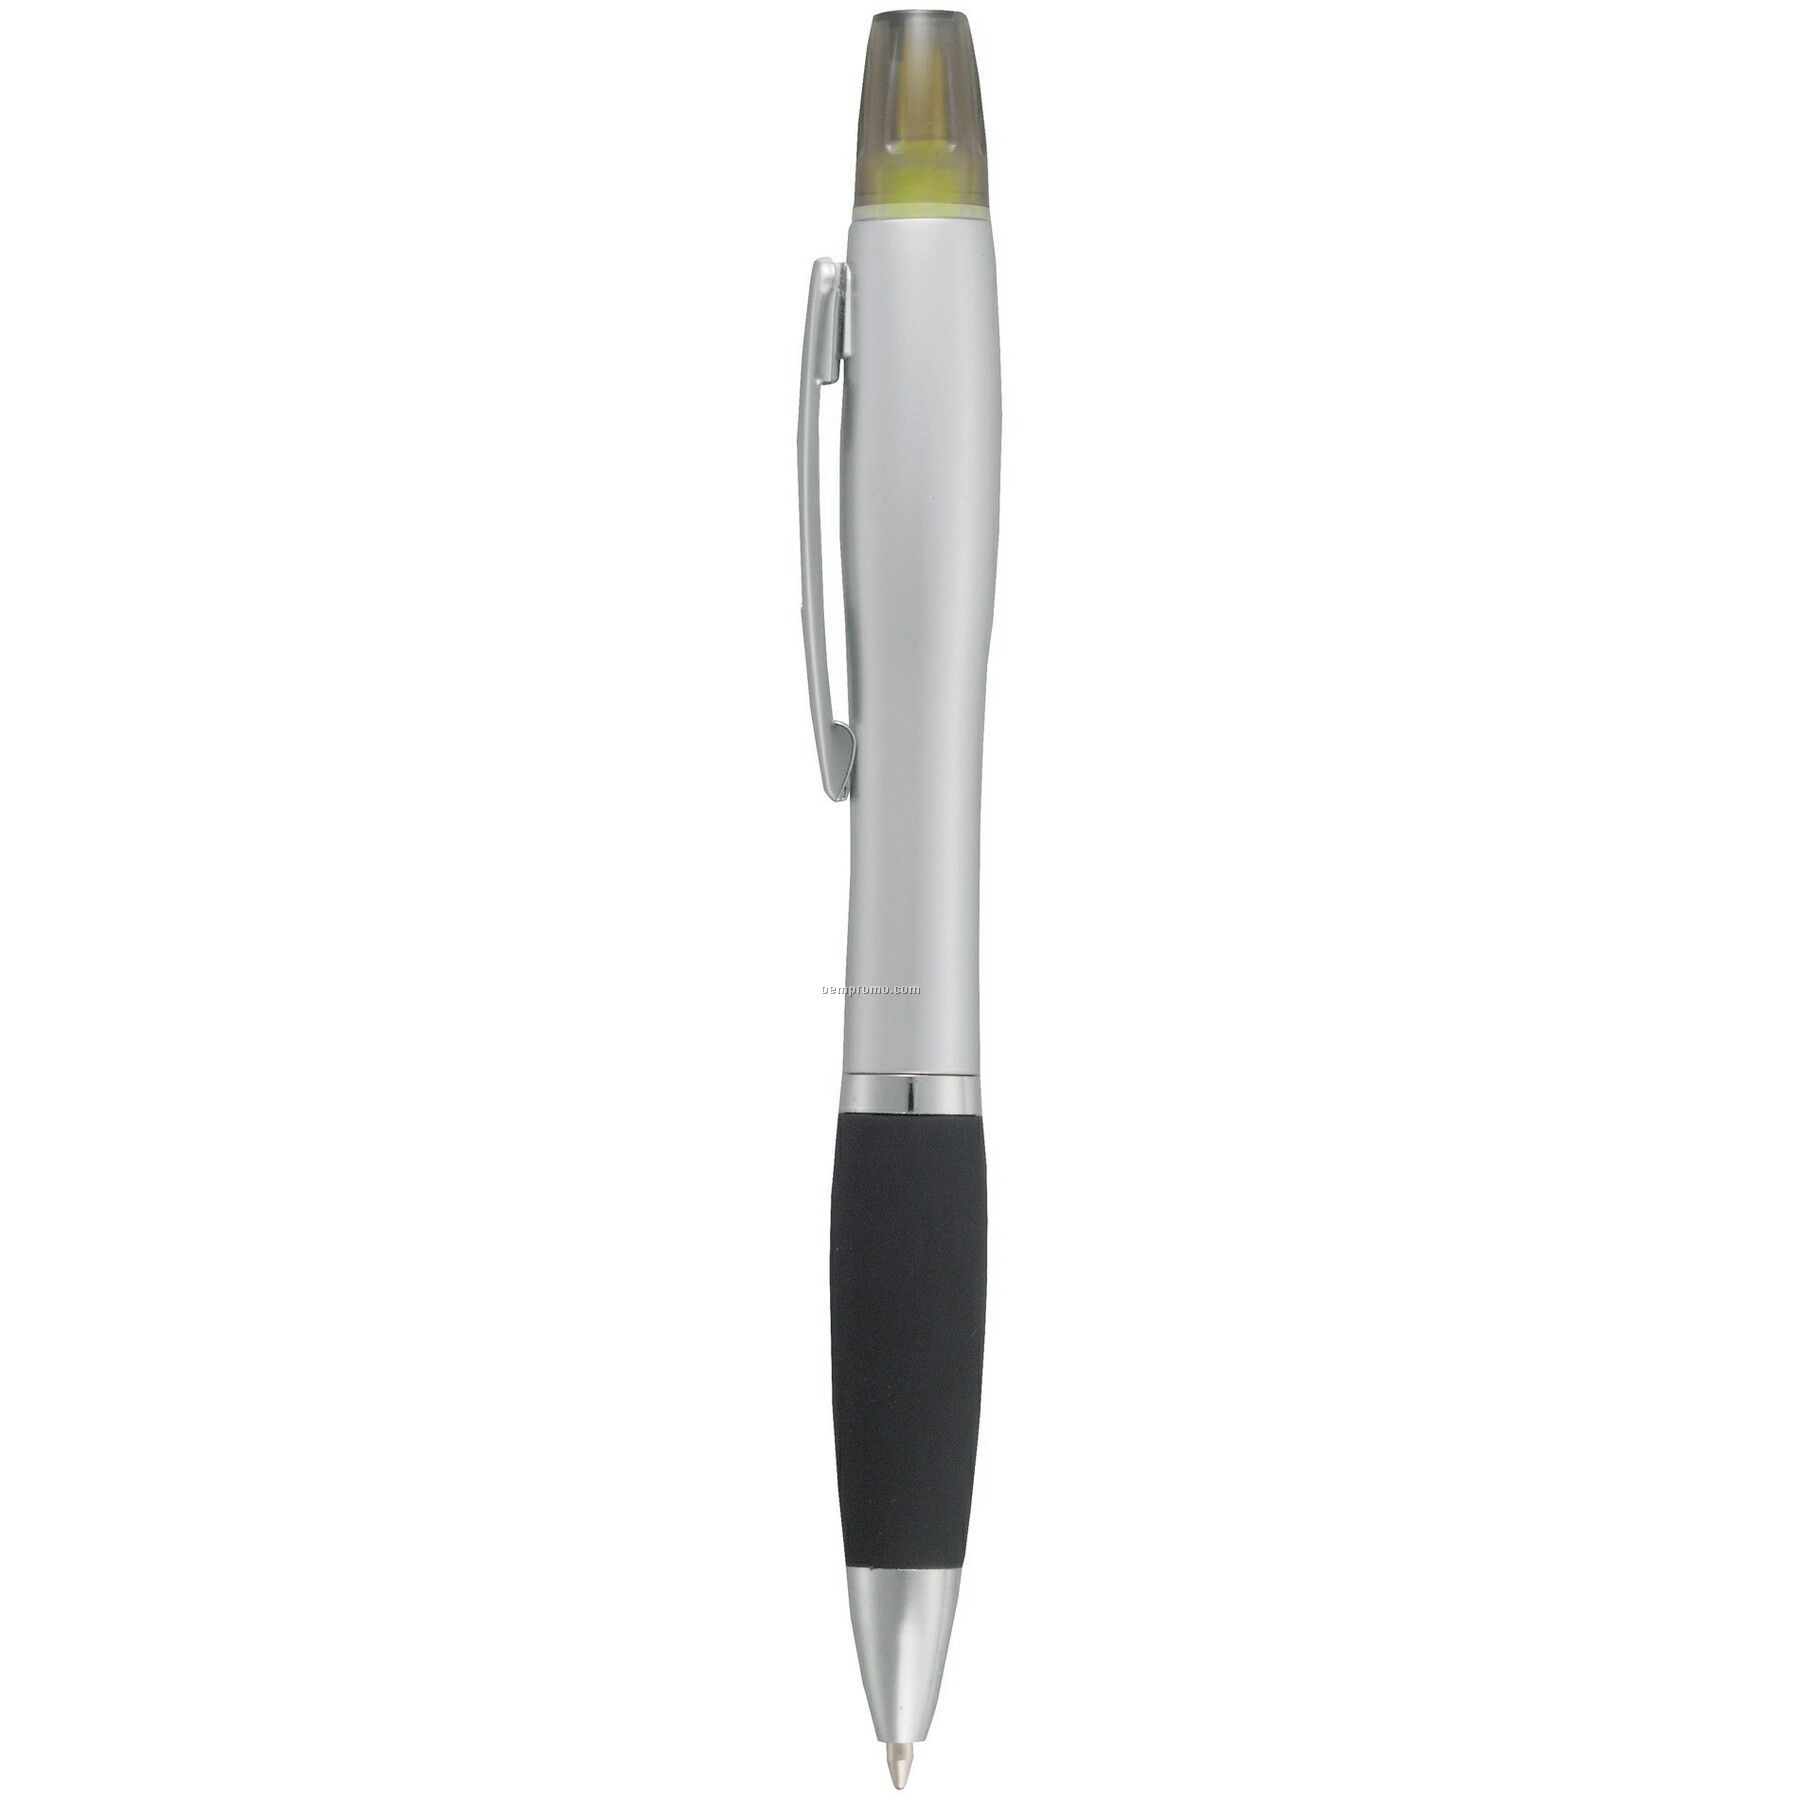 The Nash Pen Highlighter